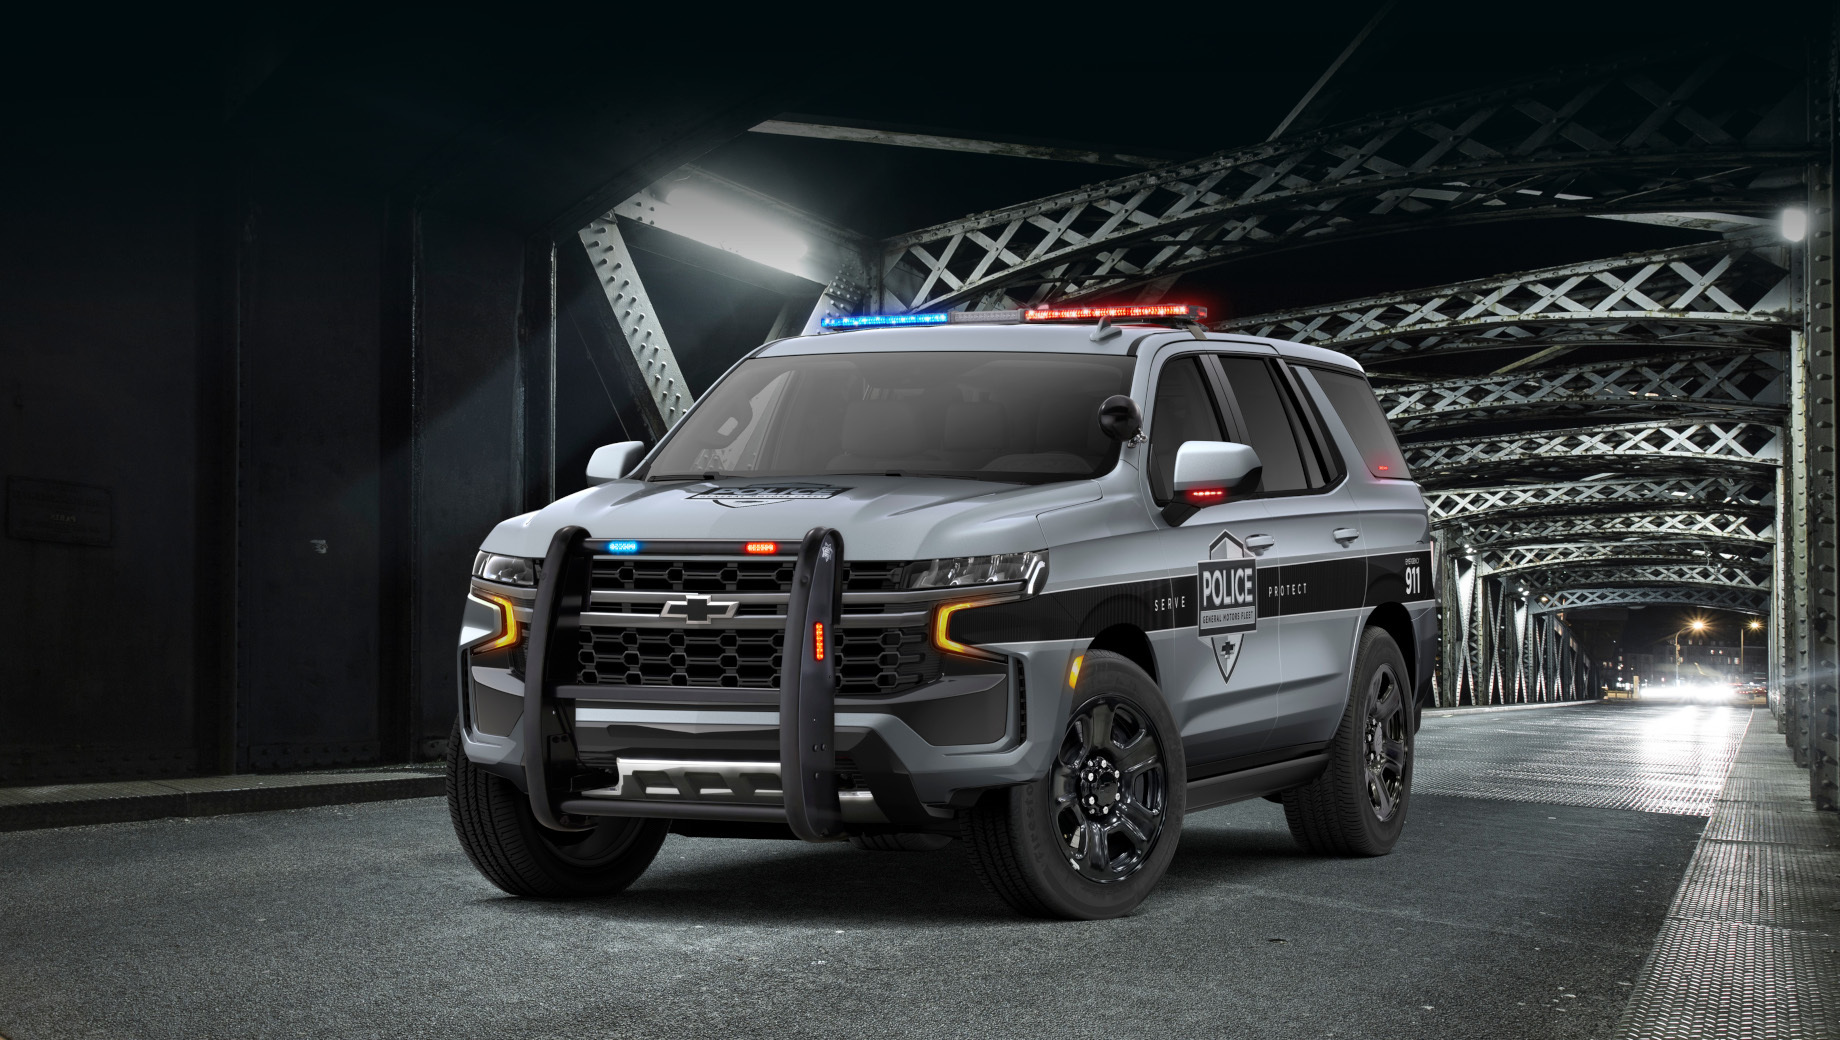 Chevrolet tahoe. Внешность полицейской машины основана на версии Tahoe Z71, но тут есть и специфические для полиции узлы и детали, и оригинальные шины с колёсами, рассчитанными на большие скорости, при этом выносливые.